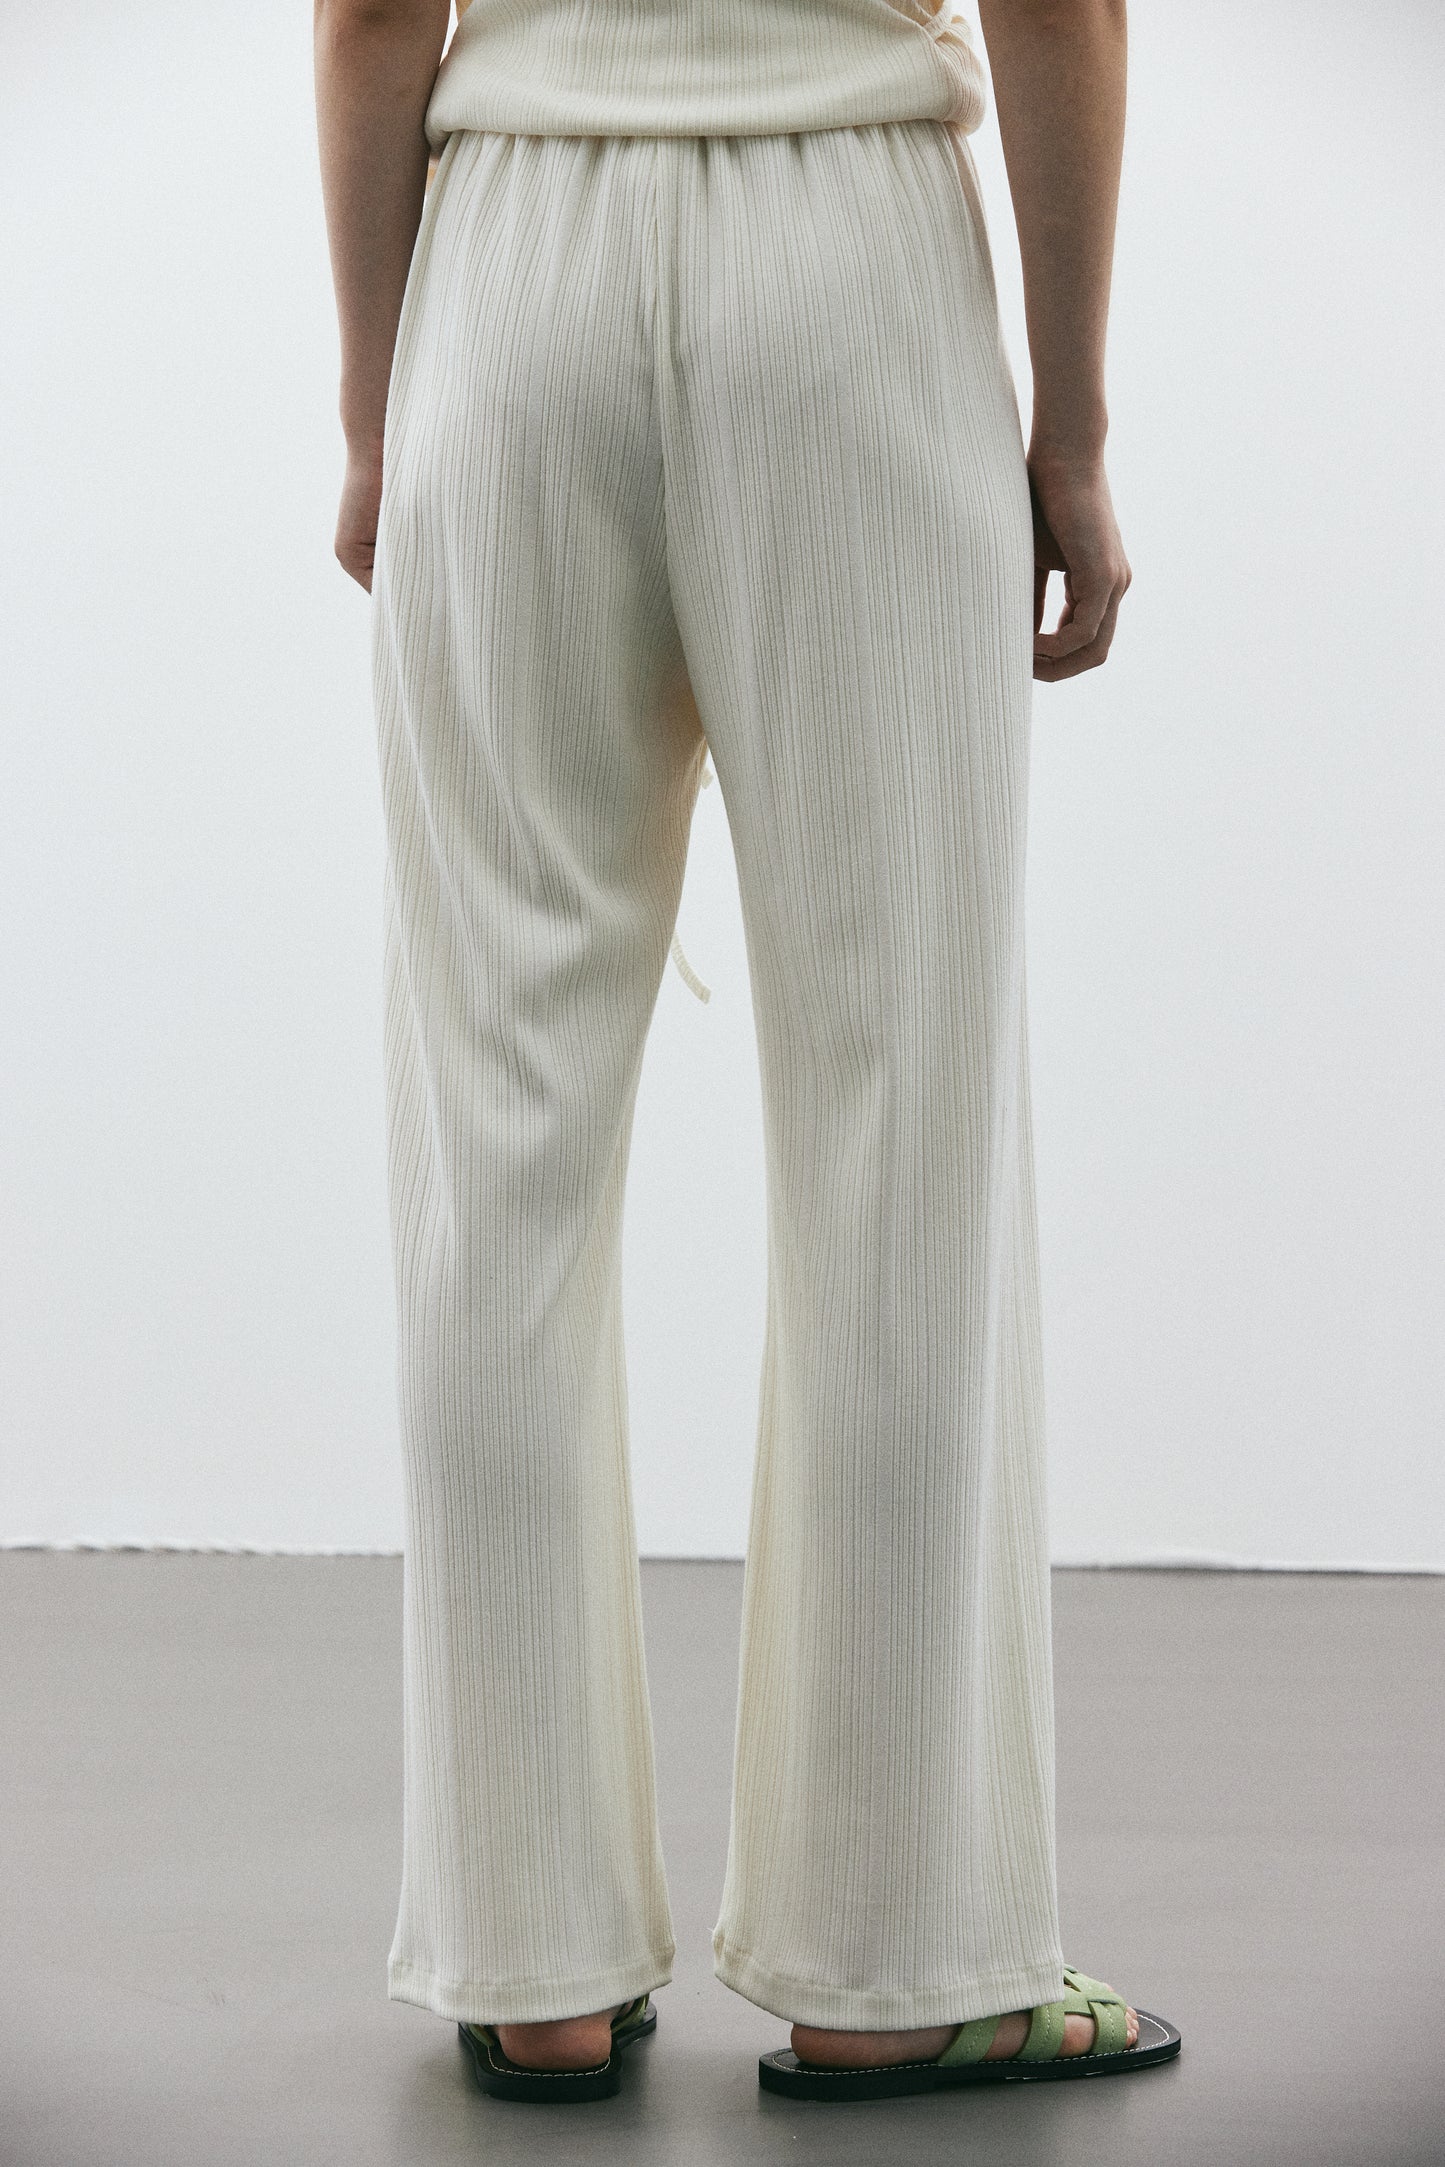 Ribbed Drawstring Pants, Cream